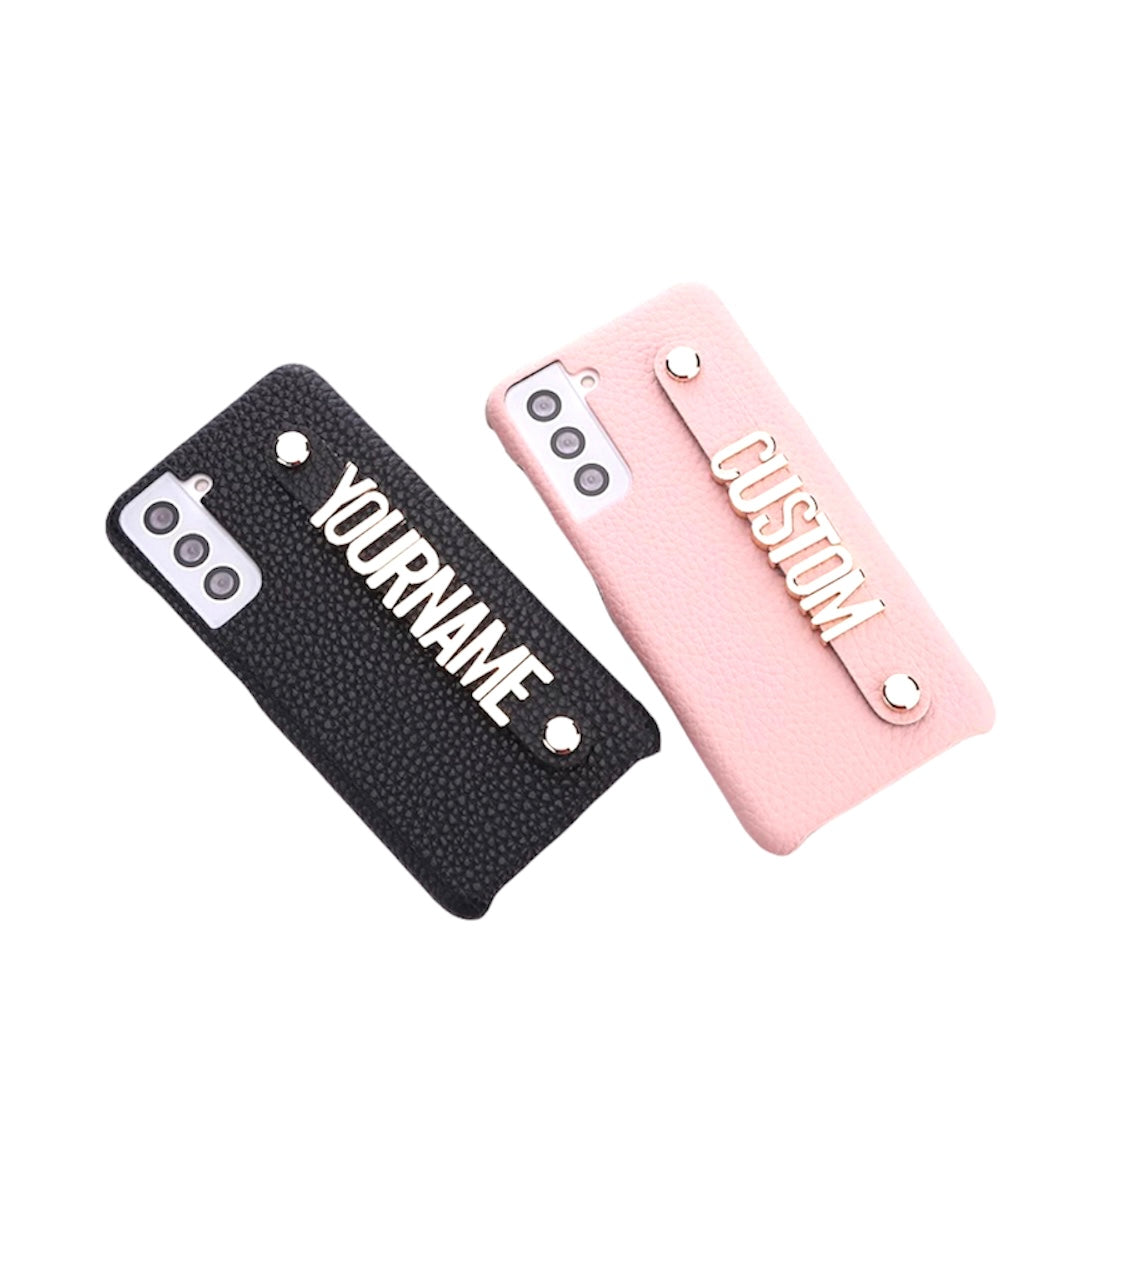 Funda para celular samsung de cuero color negra personalizable con letras de chapa de oro en dos colores rosa o negra.